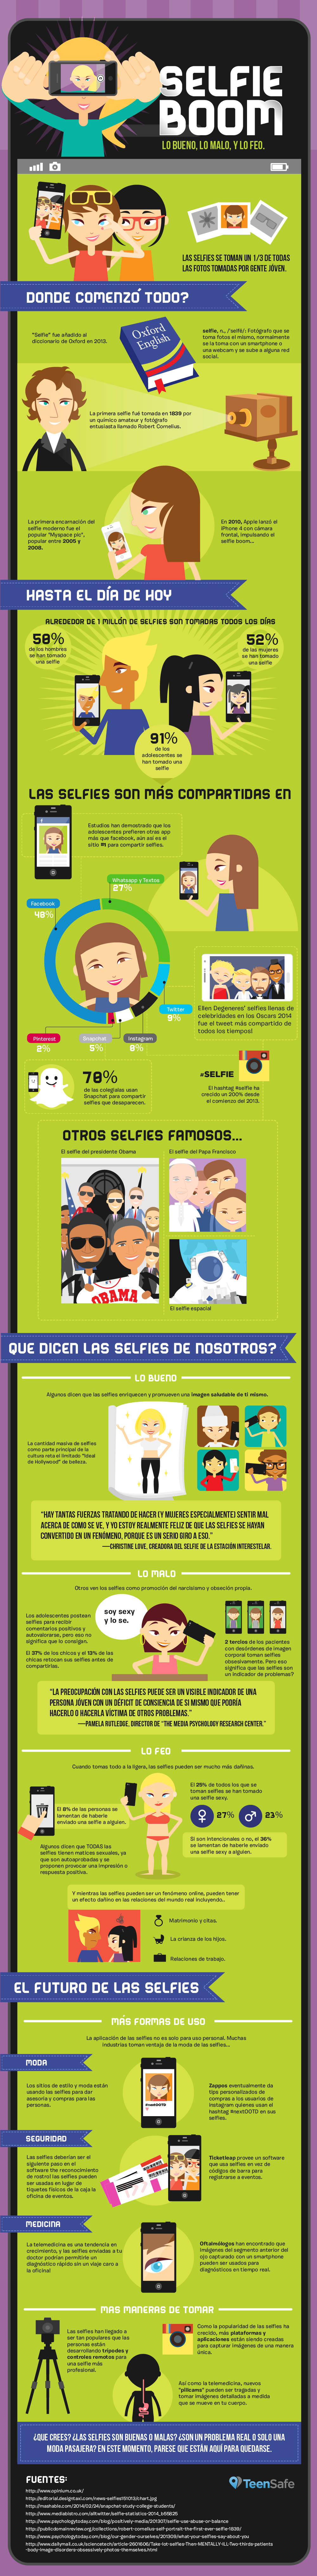 SelfieBoom lo bueno lo malo y lo feo by teensafe.com